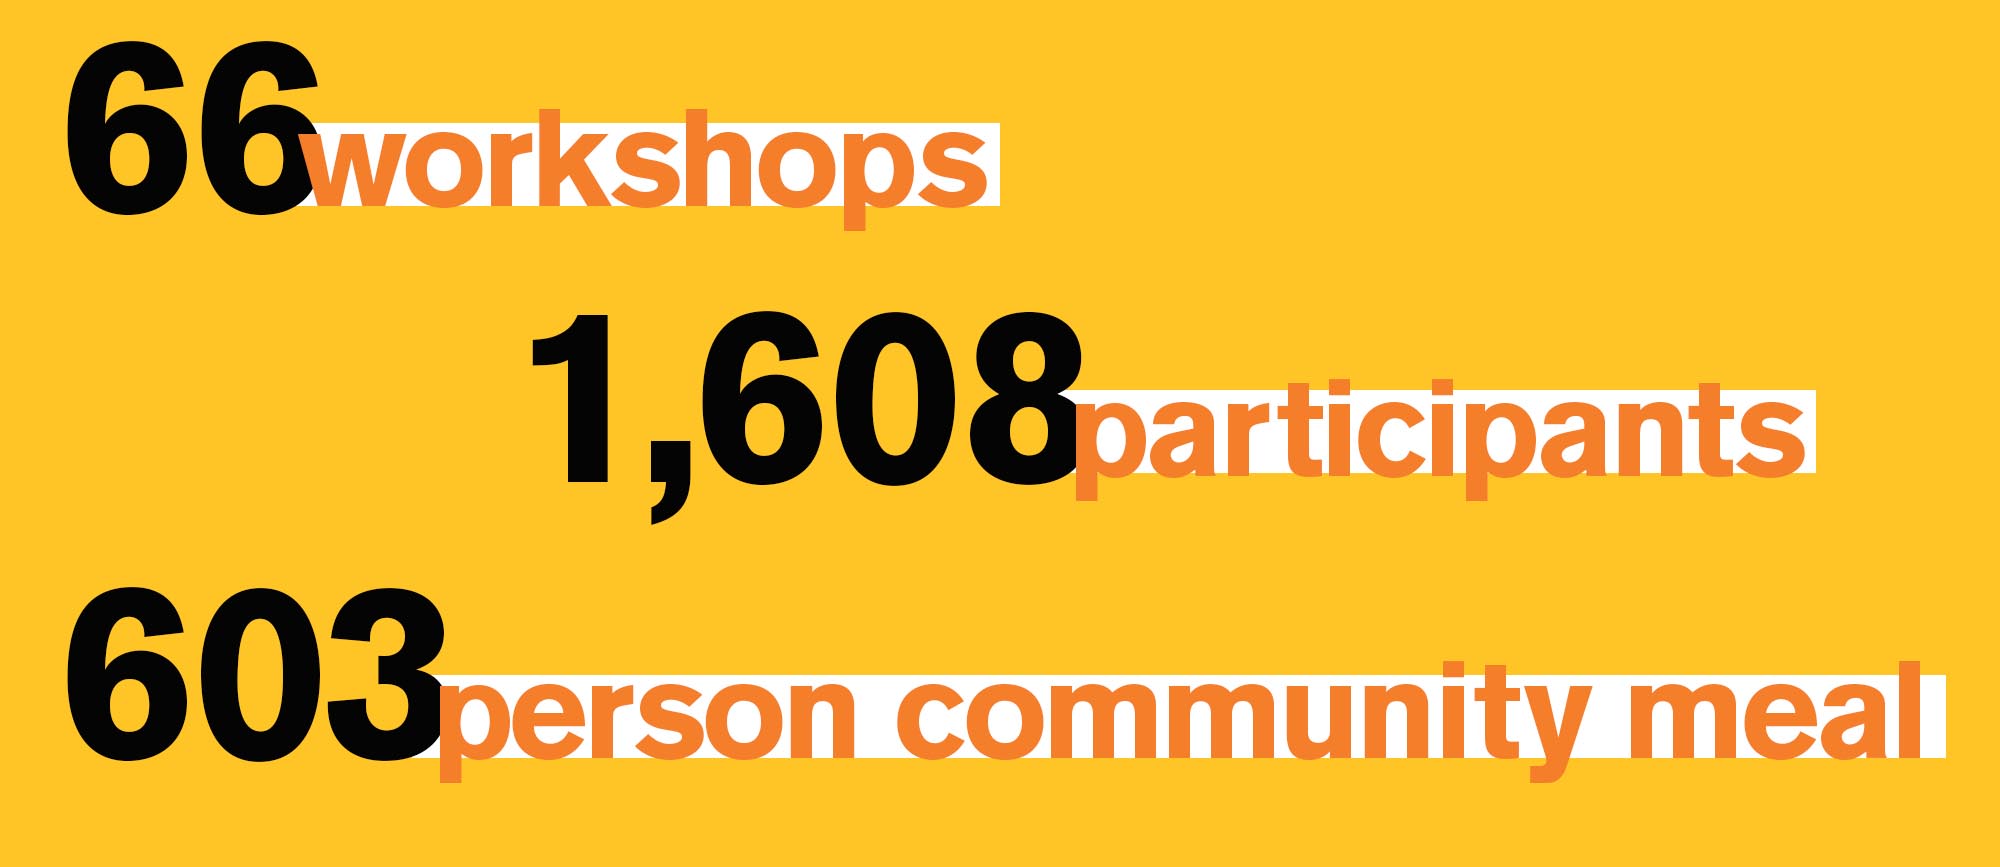 66 workshops , 1,608 participants, 603 person community meal